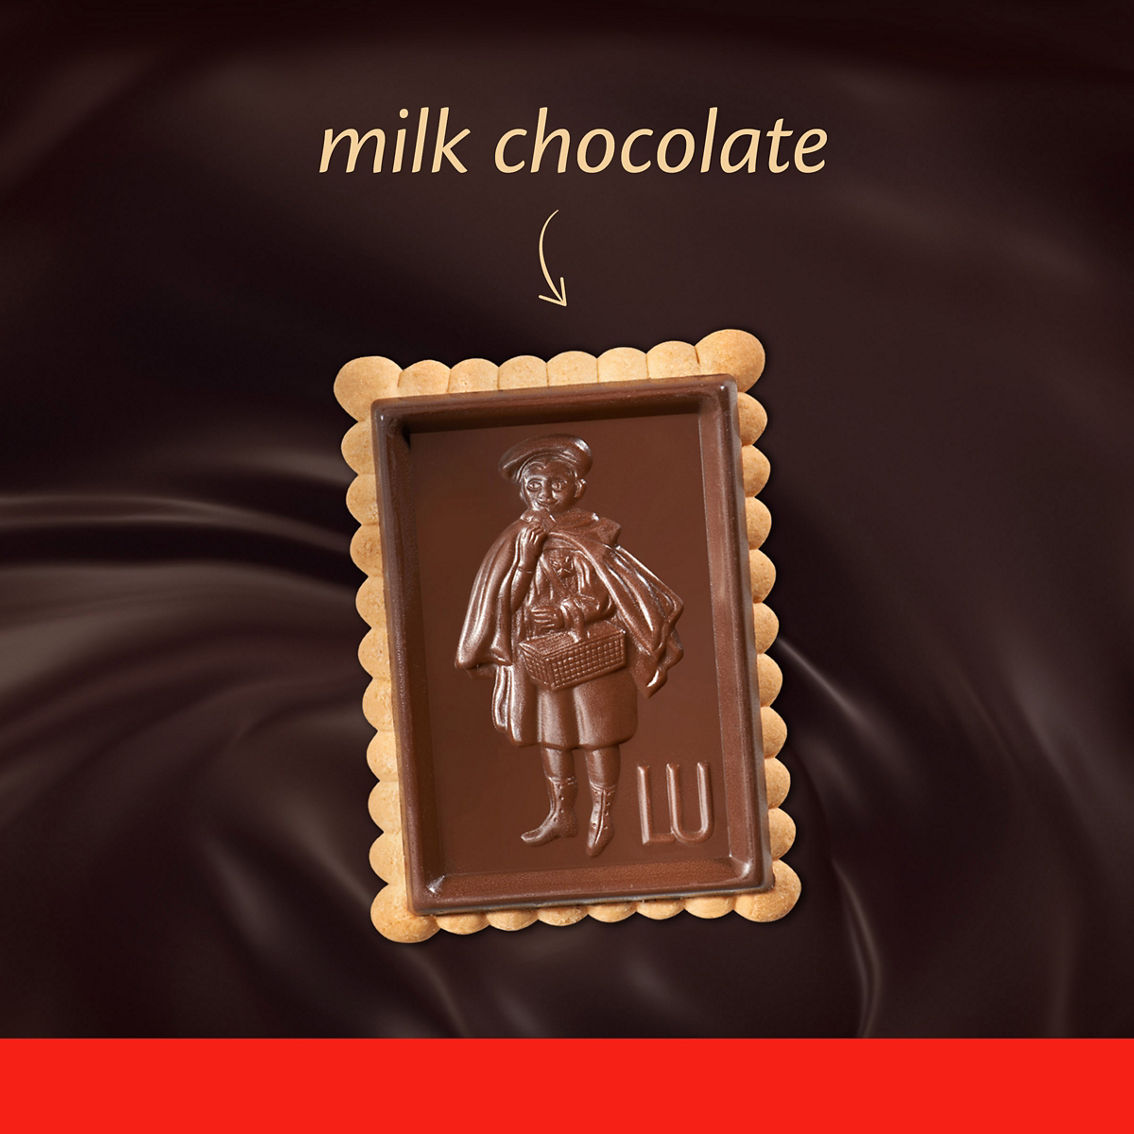 Mondelez Lu Petit Ecolier European Milk Chocolate Biscuit Cookies 5.3 oz. - Image 2 of 5